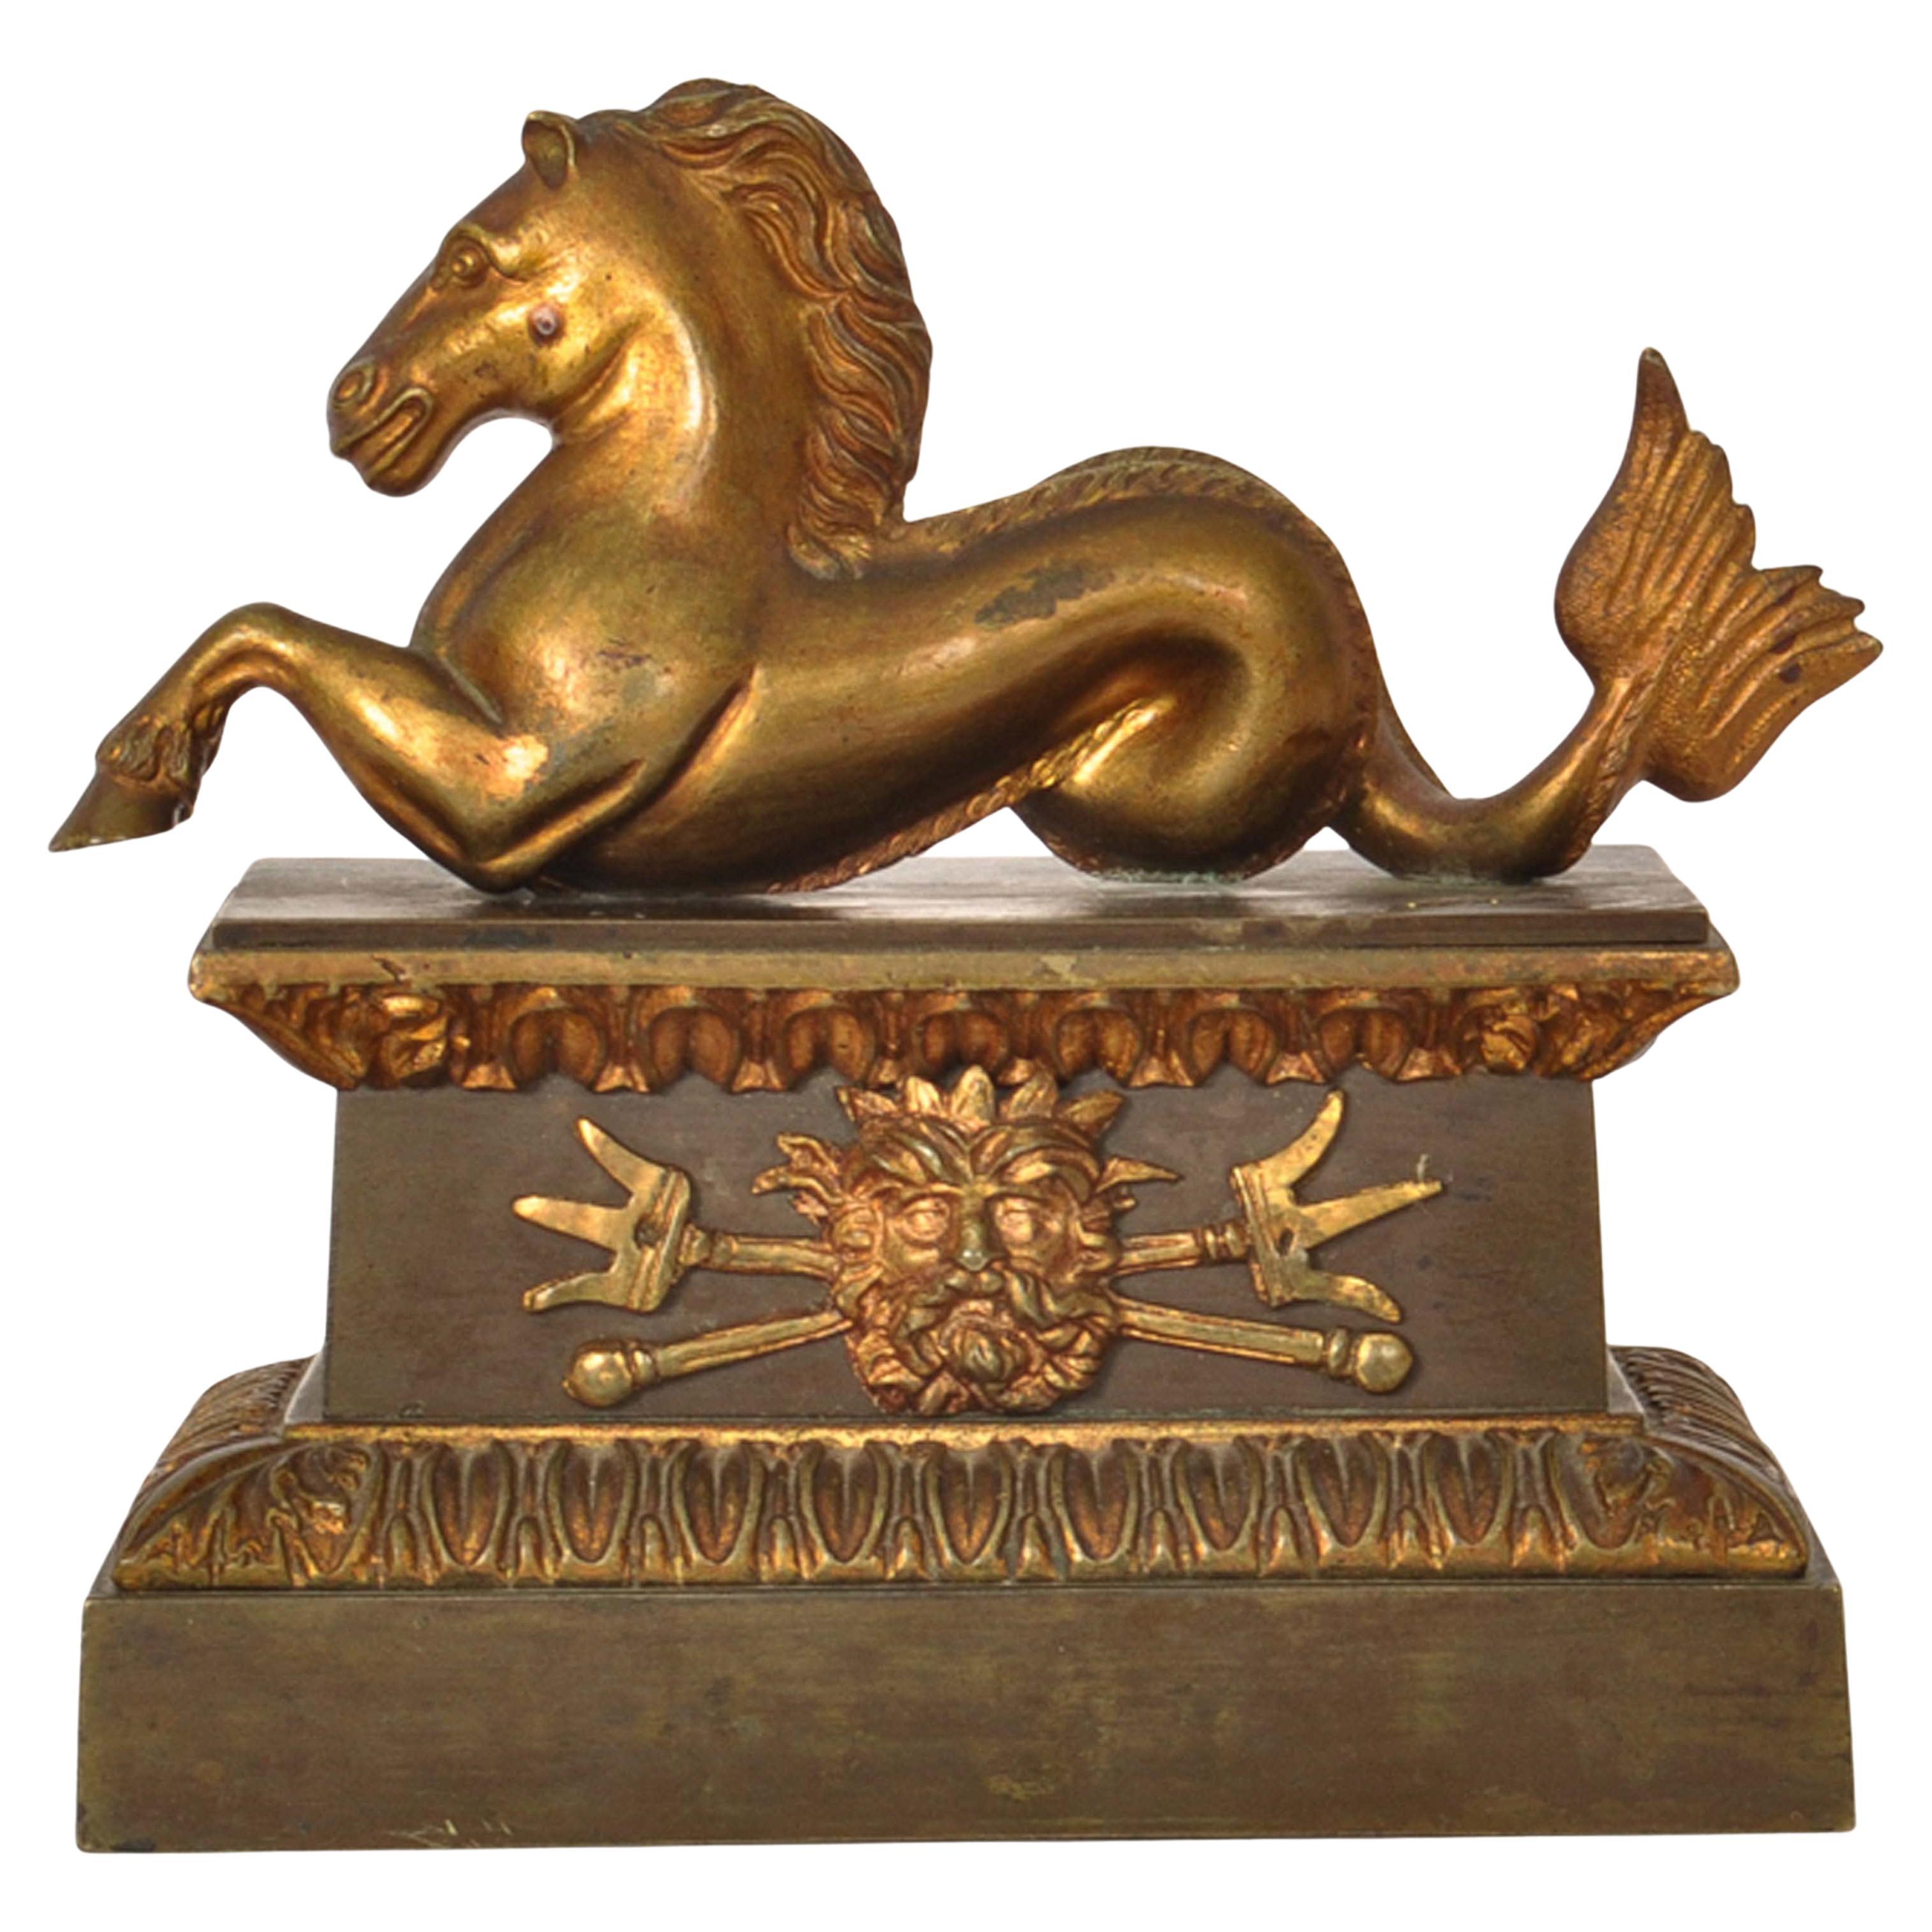 Eine feine antike Französisch Grand Tour Bronze gegossen Hippocampus, Seepferdchen Statue Schreibtisch Ornament, um 1820.
Diese wunderbare Bronze ist im Wachsausschmelzverfahren (cire perdue) gegossen, sie stellt einen Hippocampus aus der römischen